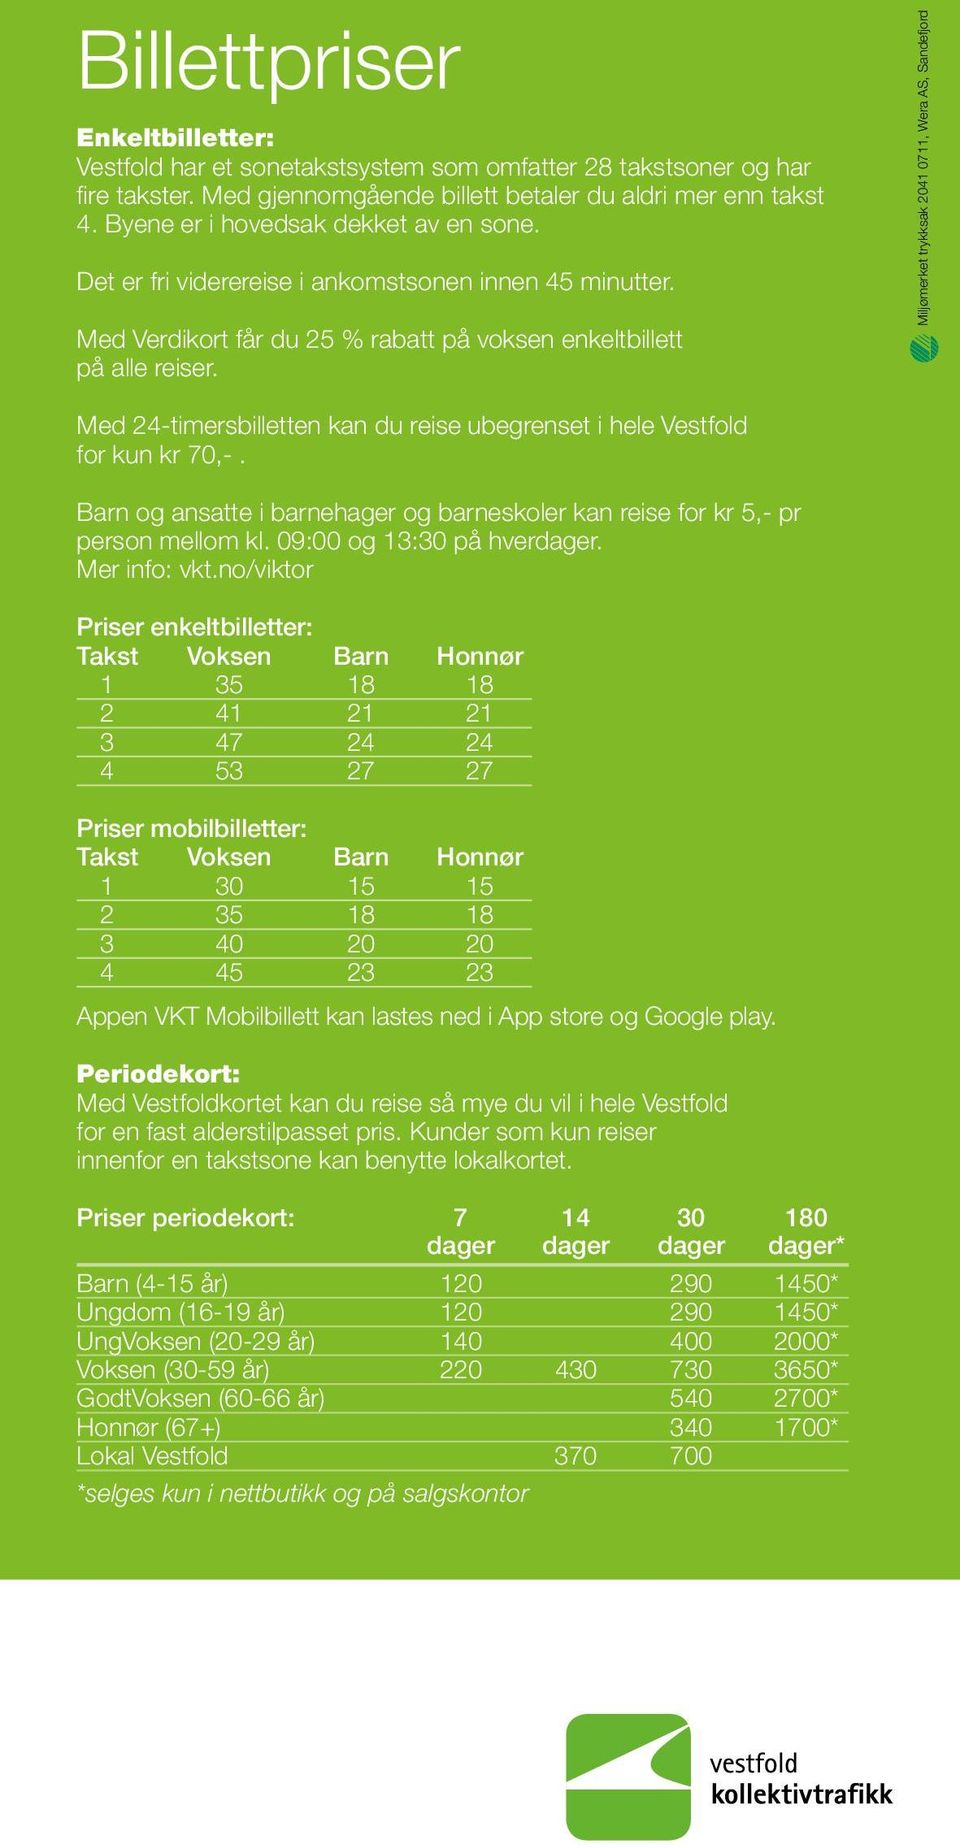 Miljømerket trykksak 2041 0711, Wera AS, Sandefjord Med 24-timersbilletten kan du reise ubegrenset i hele Vestfold for kun kr 70,-.